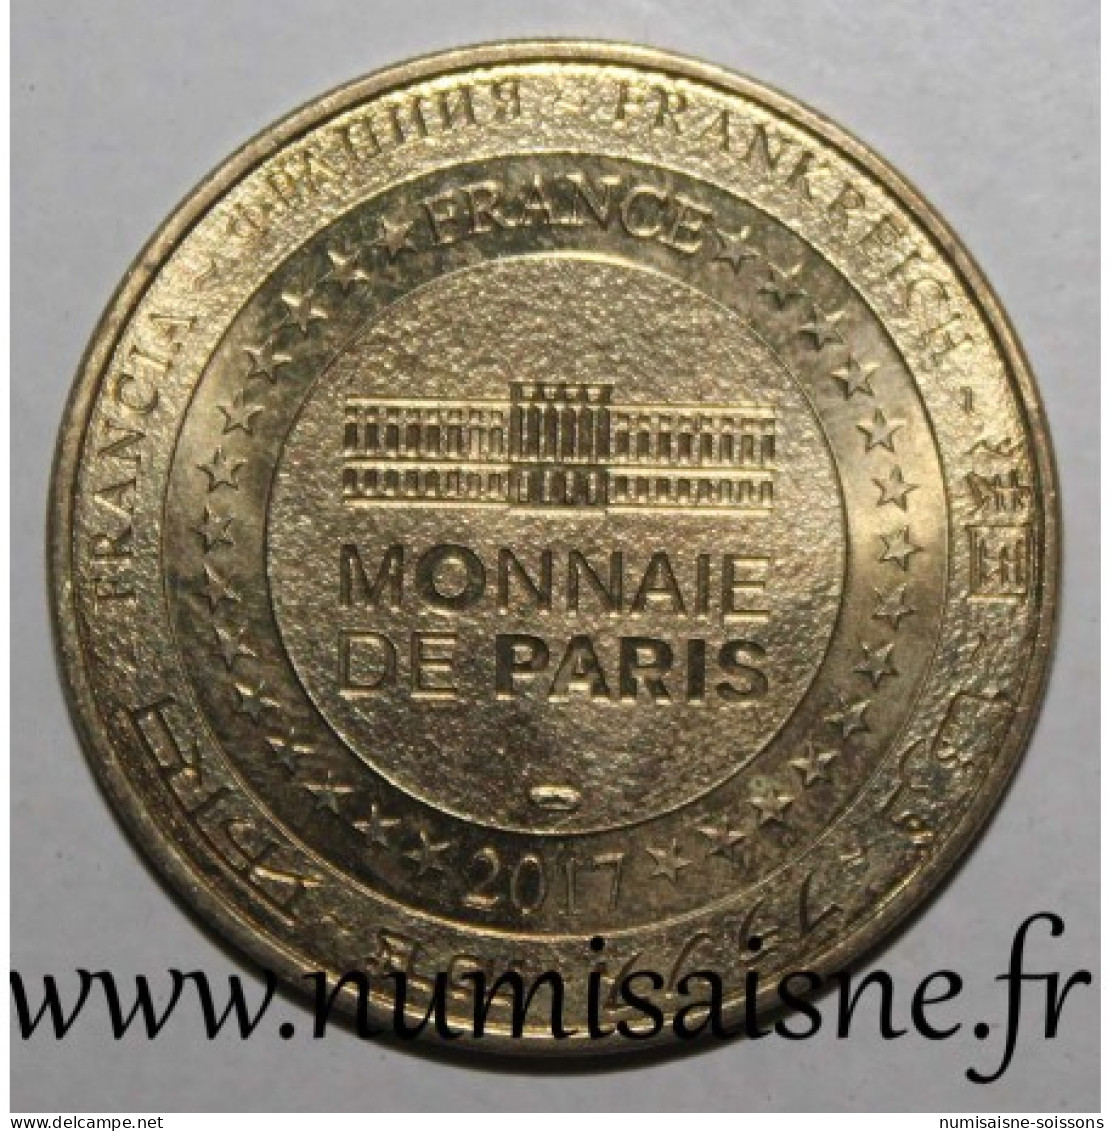 35 - SAINT MALO - GRAND AQUARIUM - POULPE - Monnaie De Paris - 2017 - Ohne Datum